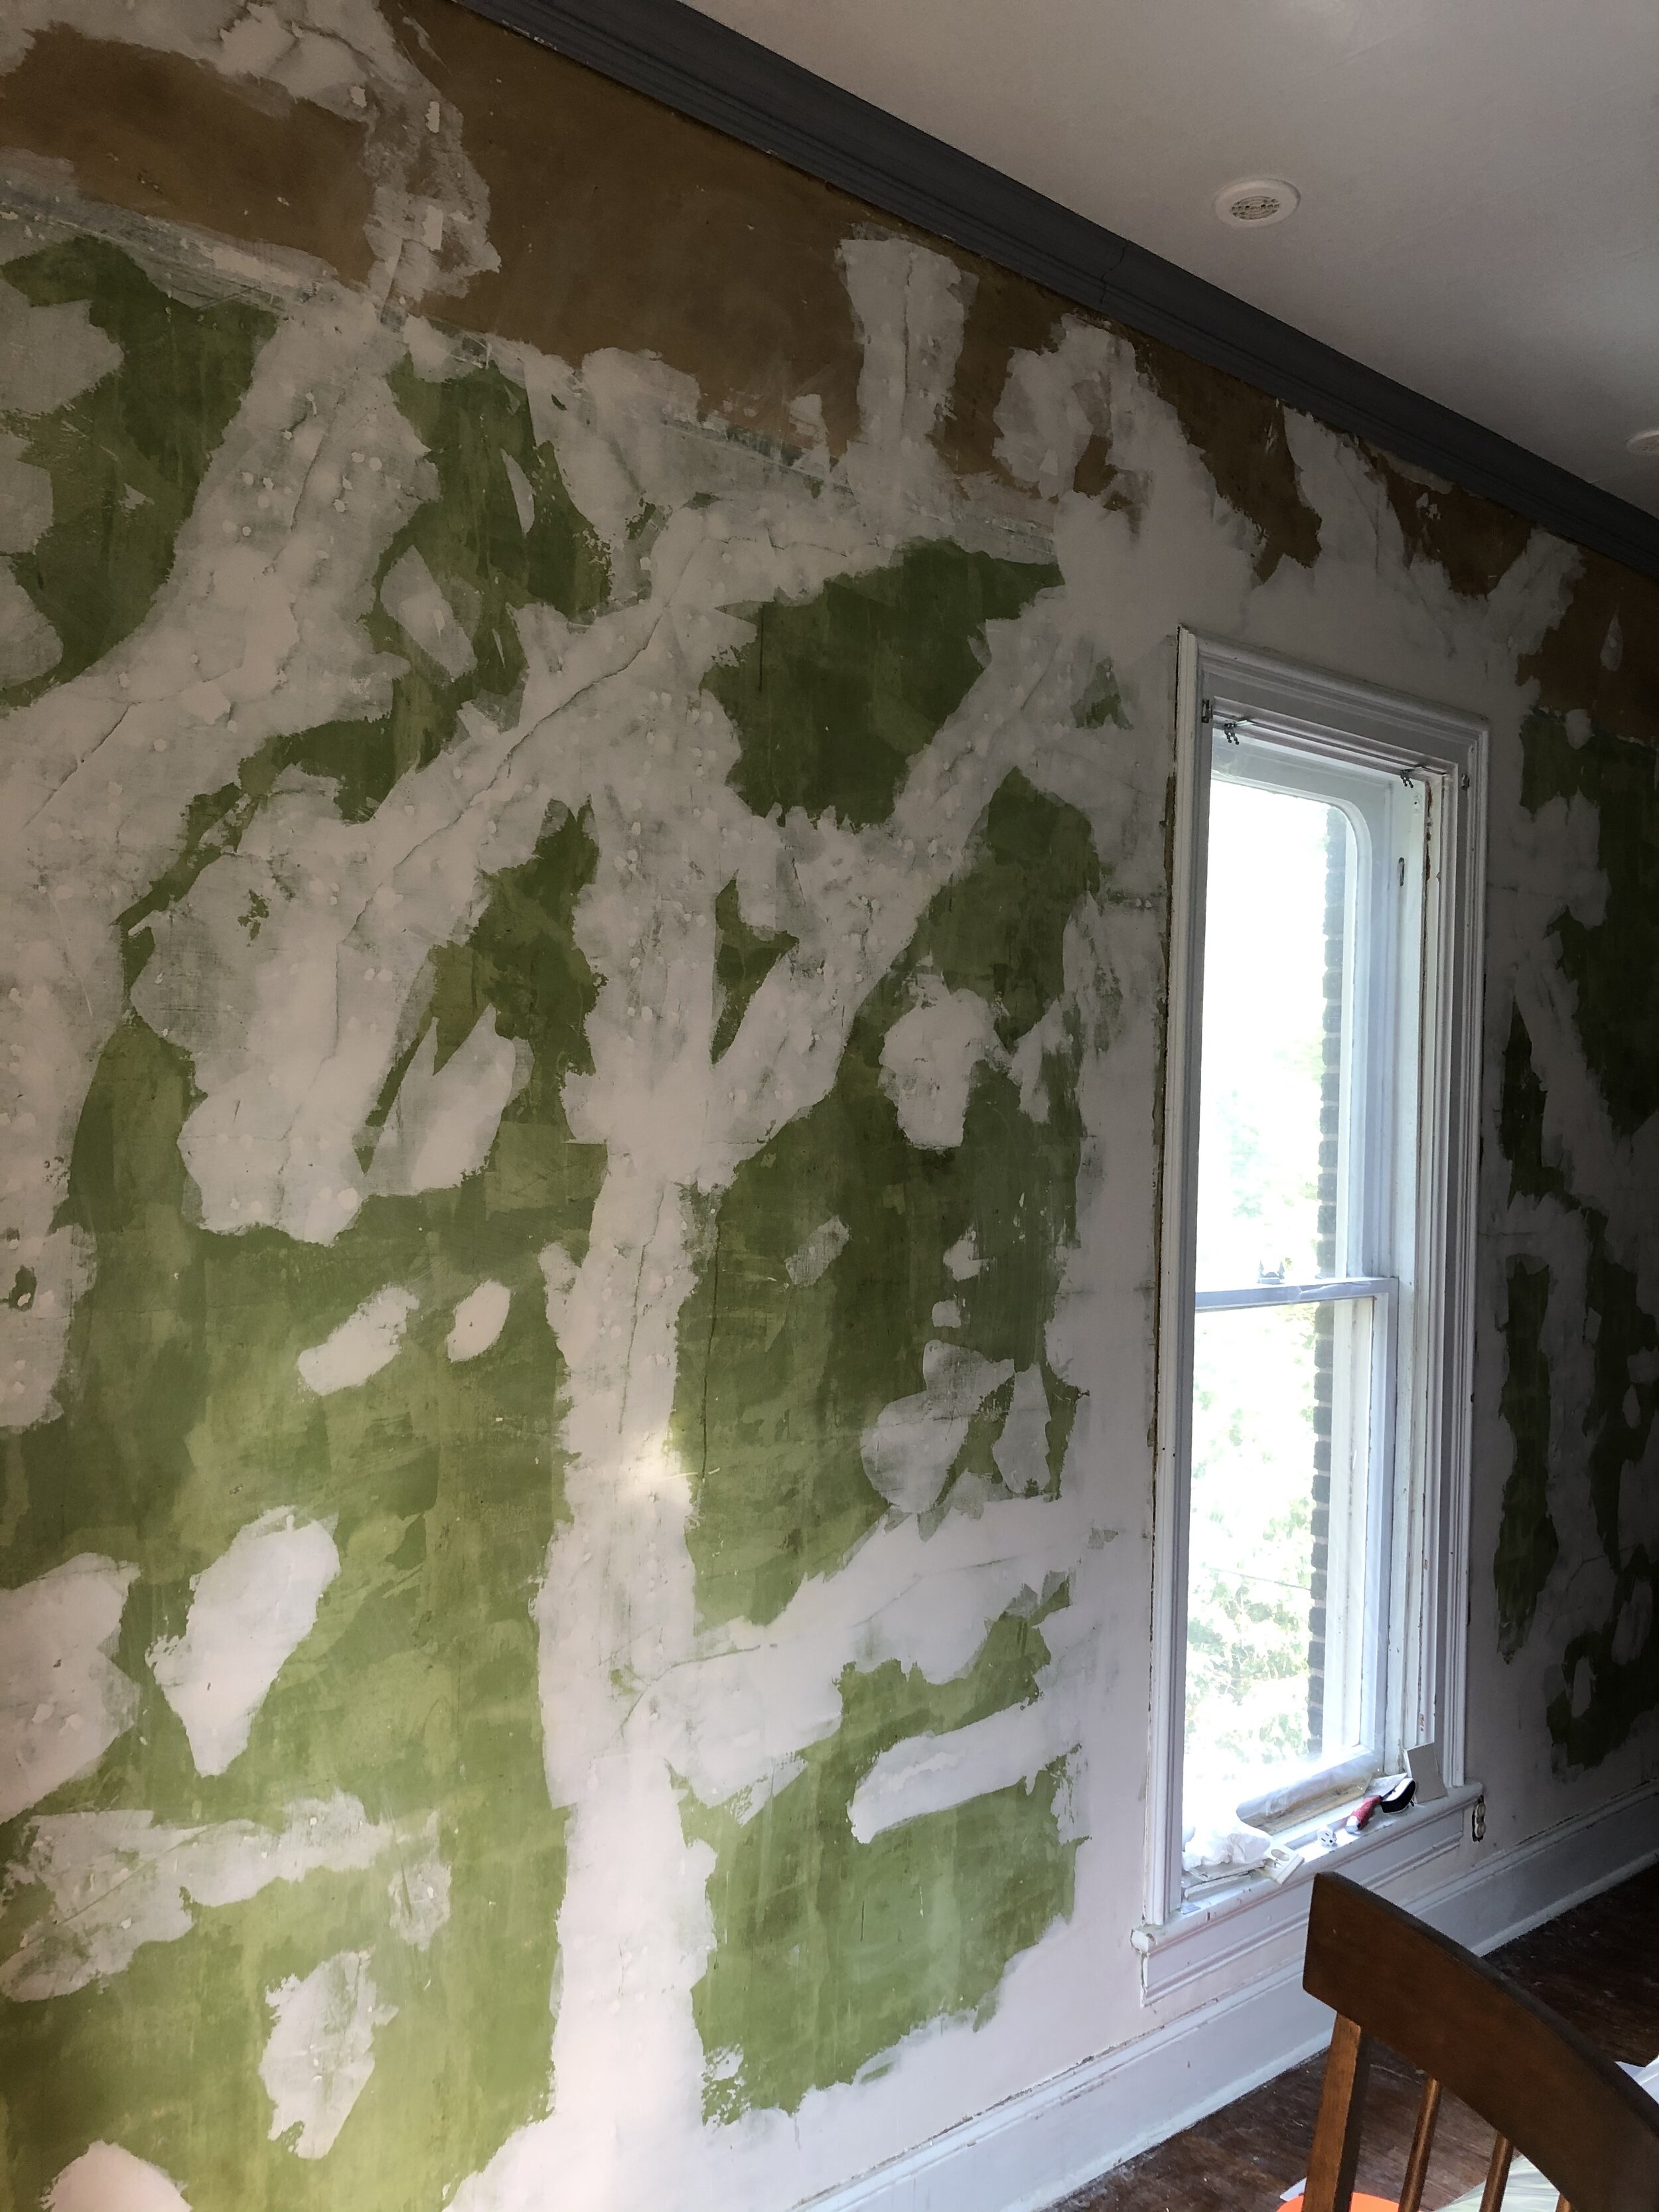 plaster wall repair cracks.jpg